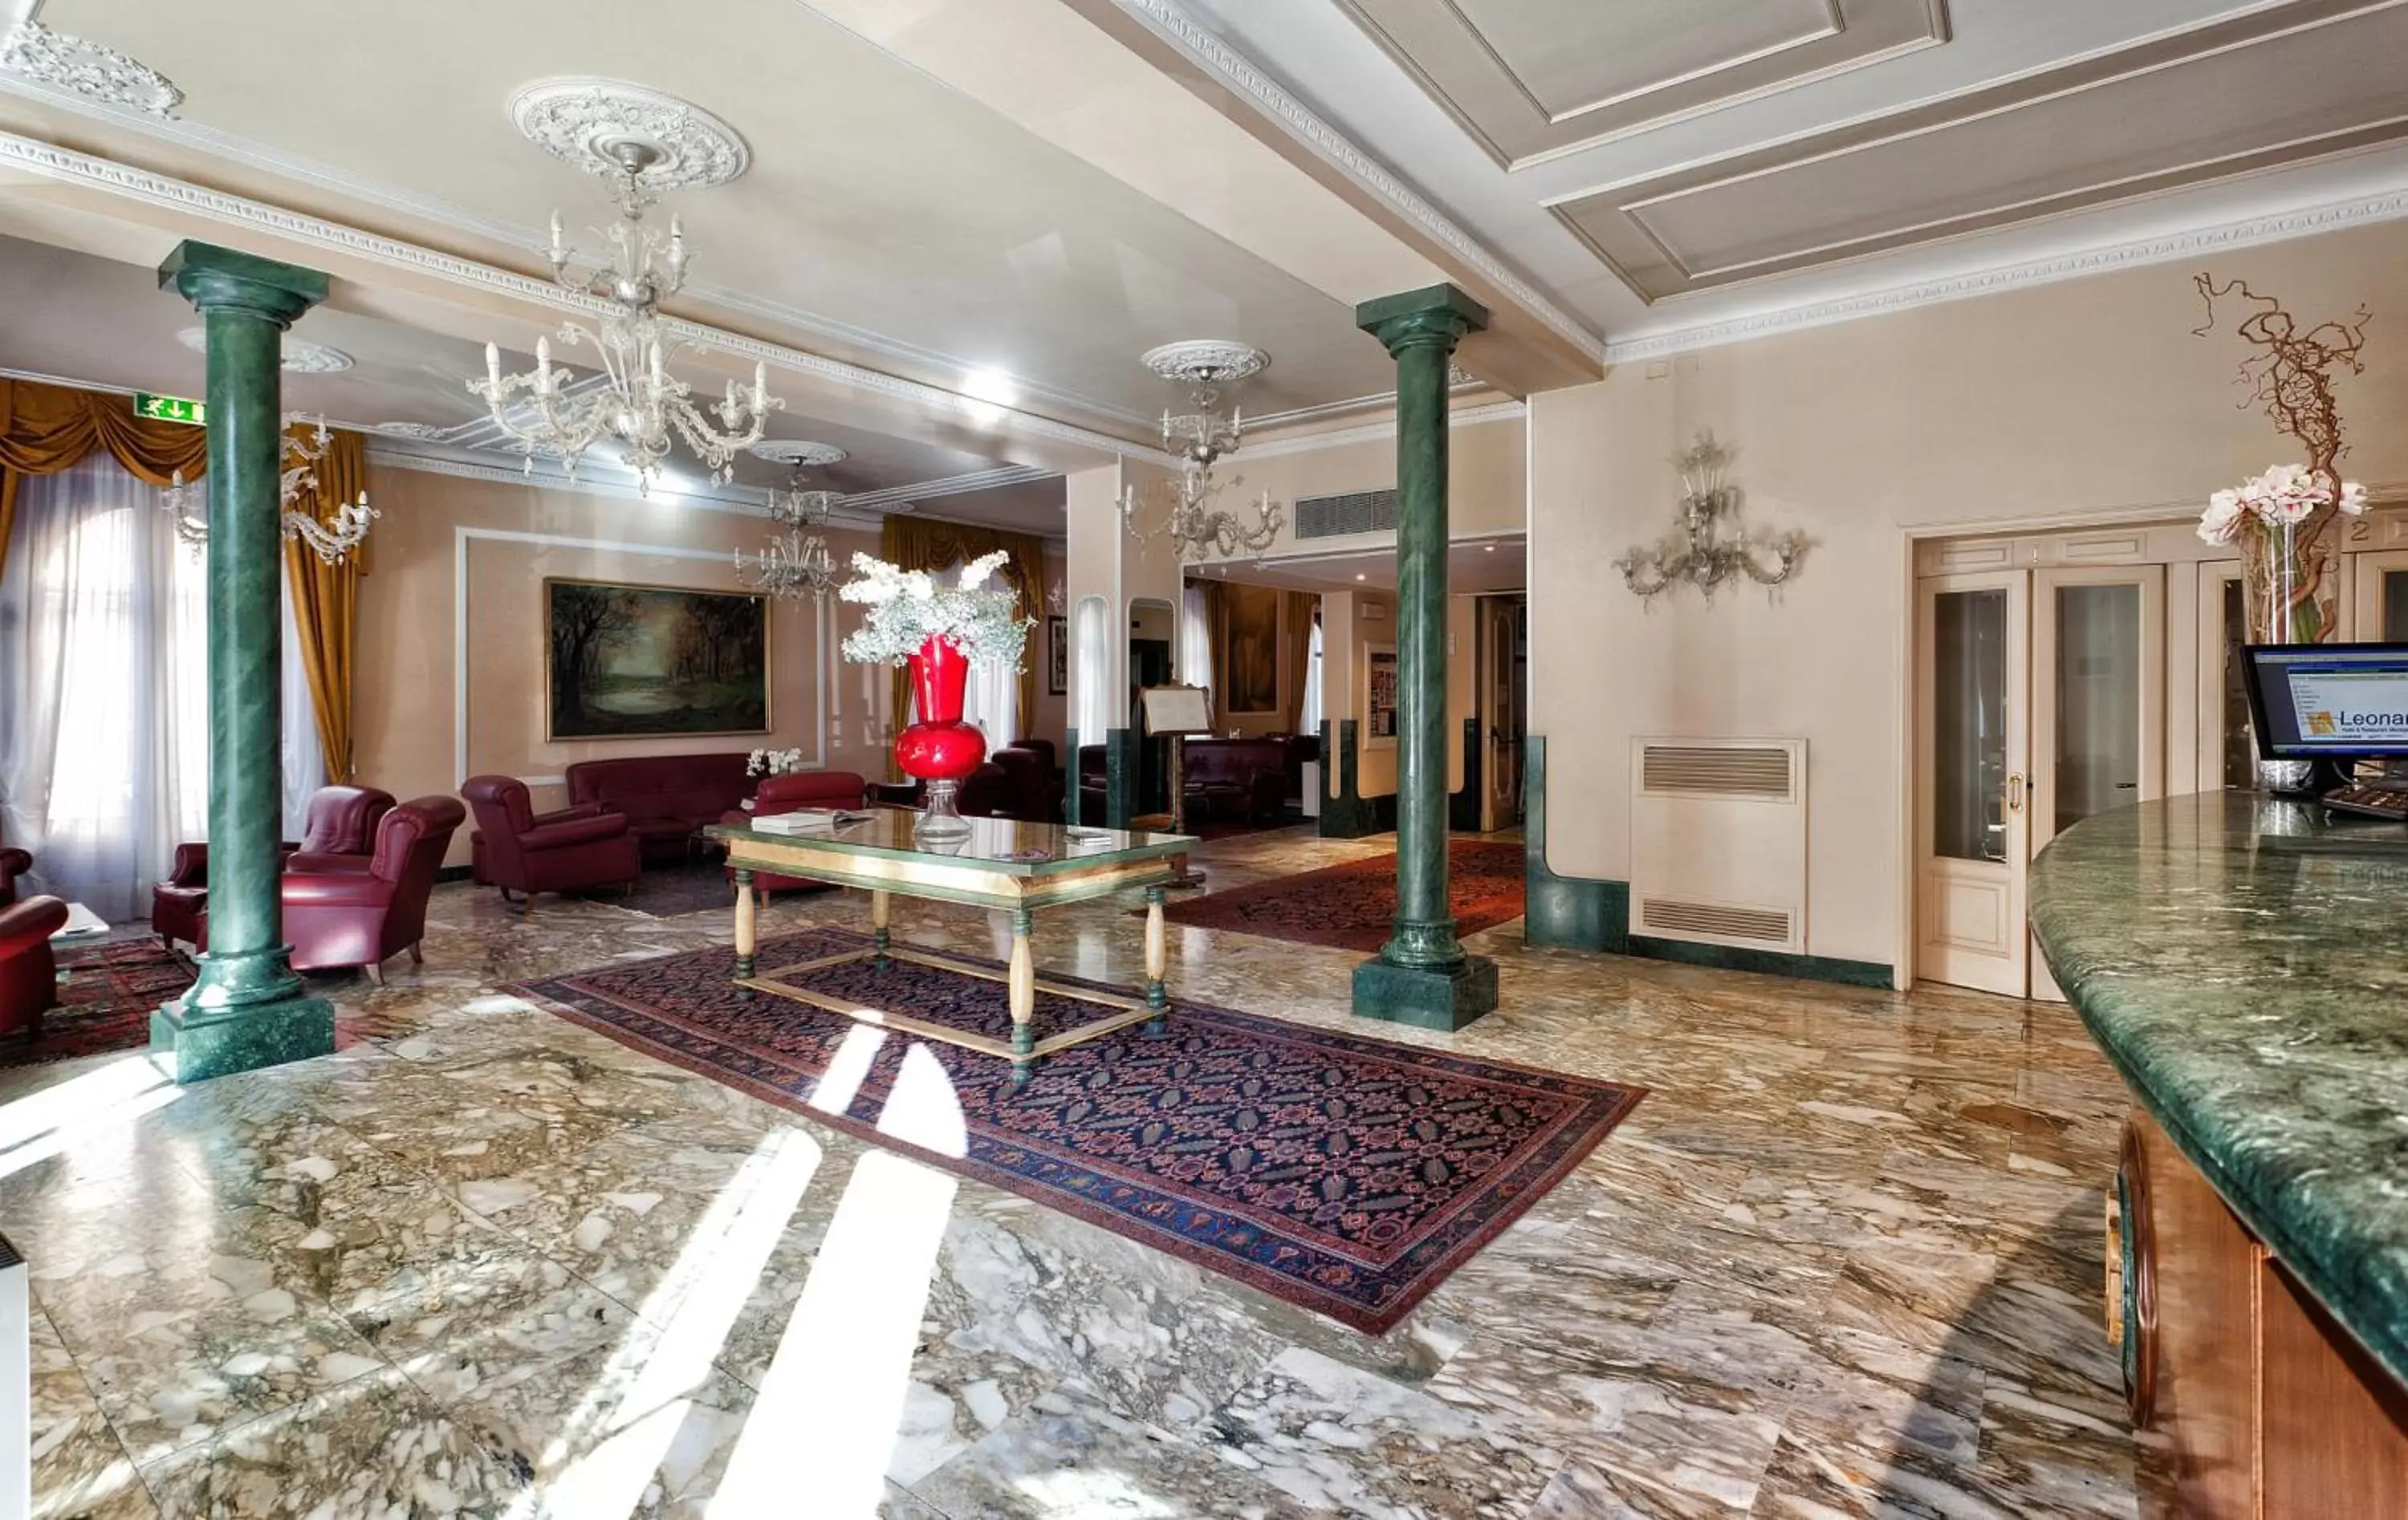 Lobby or reception in Hotel Ercolini & Savi